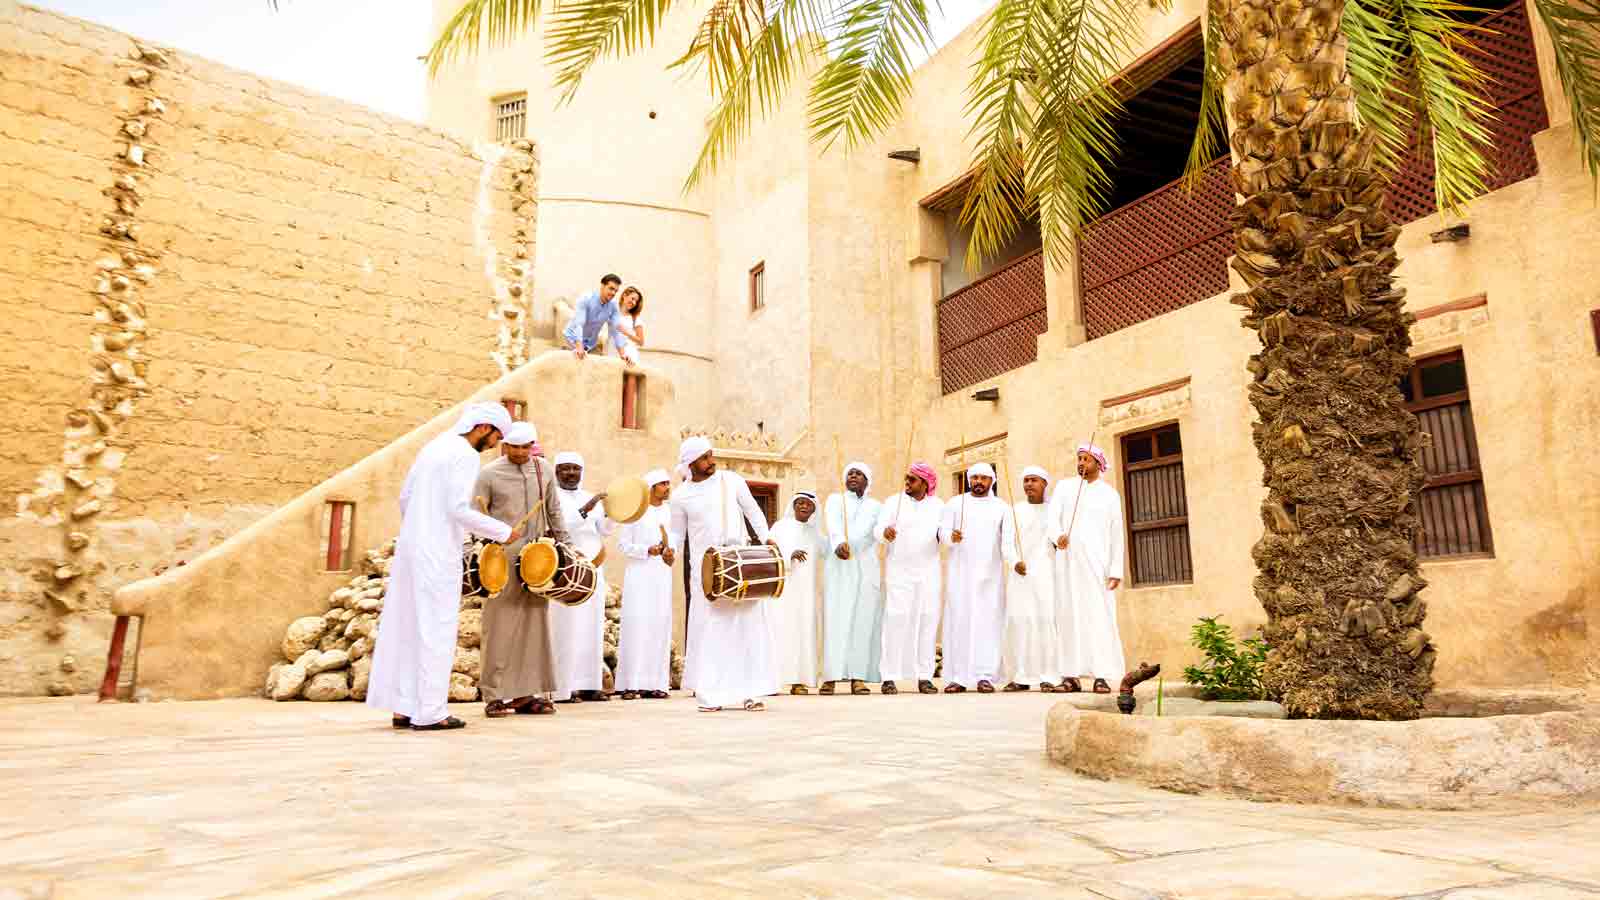 Emirati men dancing in Ajman Museum